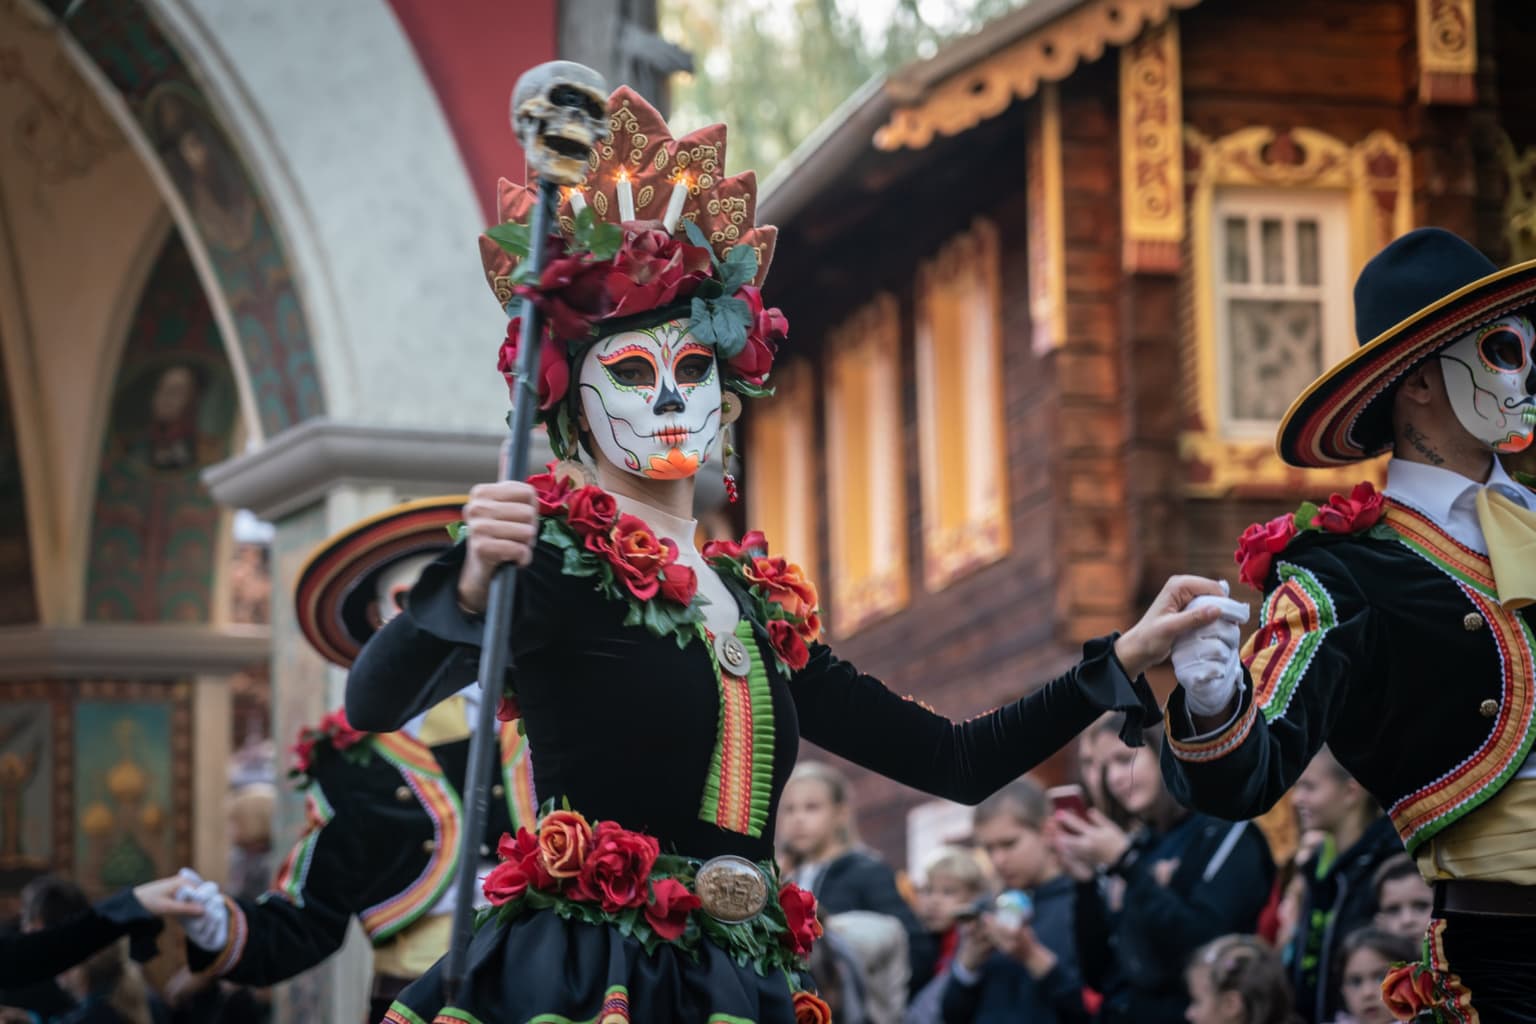 De Halloween-parade behoort tot de grootste attracties van pretpark Europapark in Rus